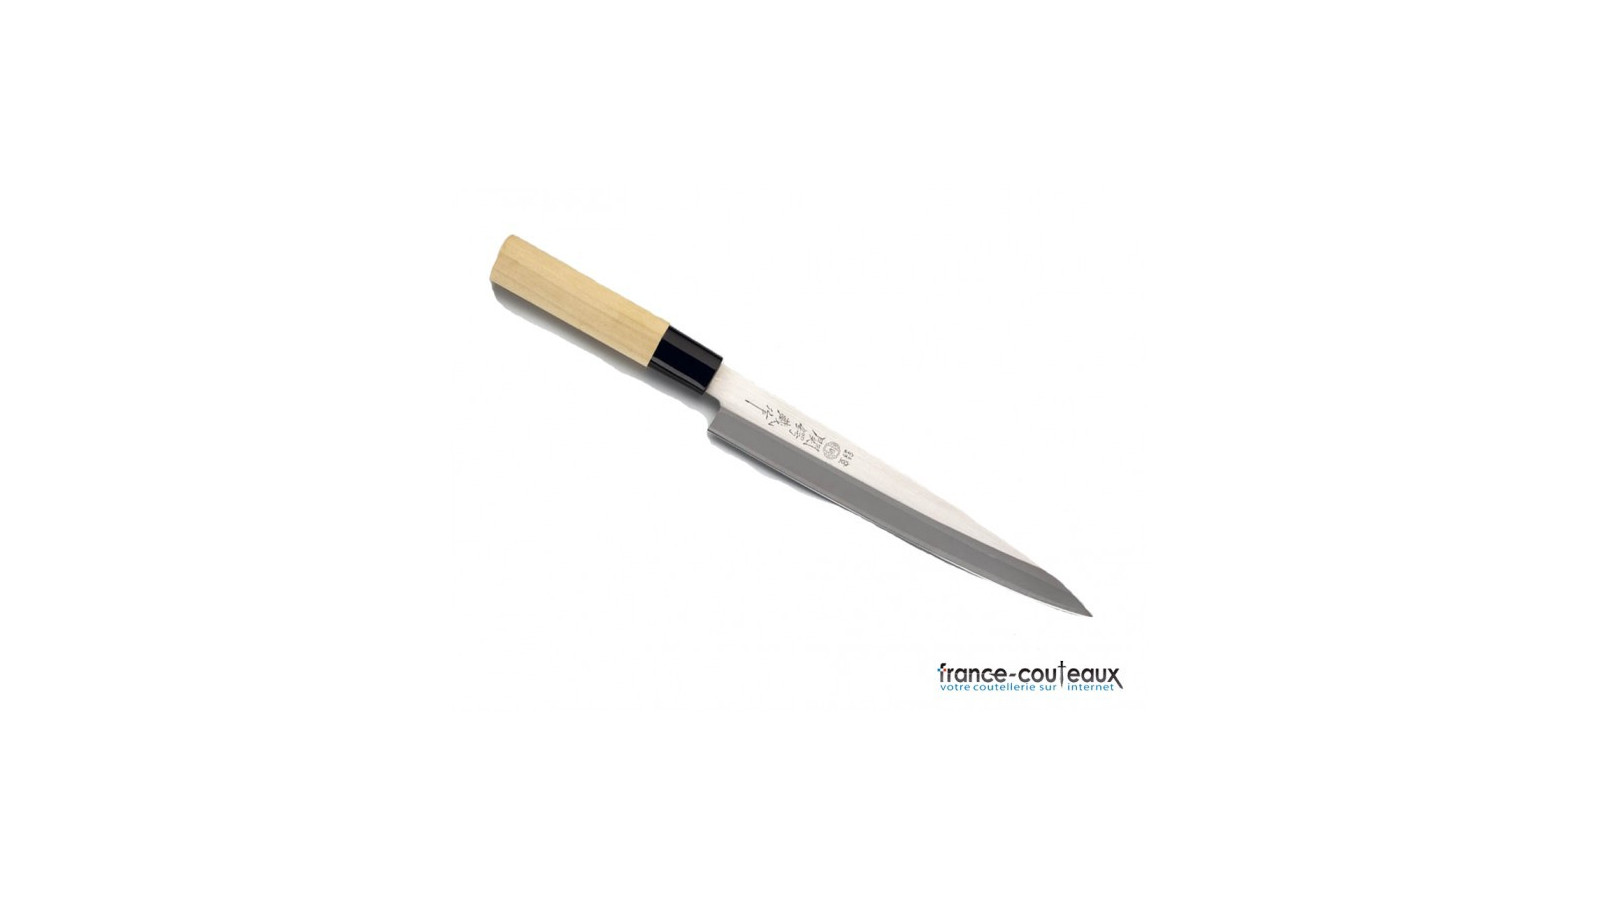 Couteau de cuisine japonais Sashimi avec lame inox 21cm